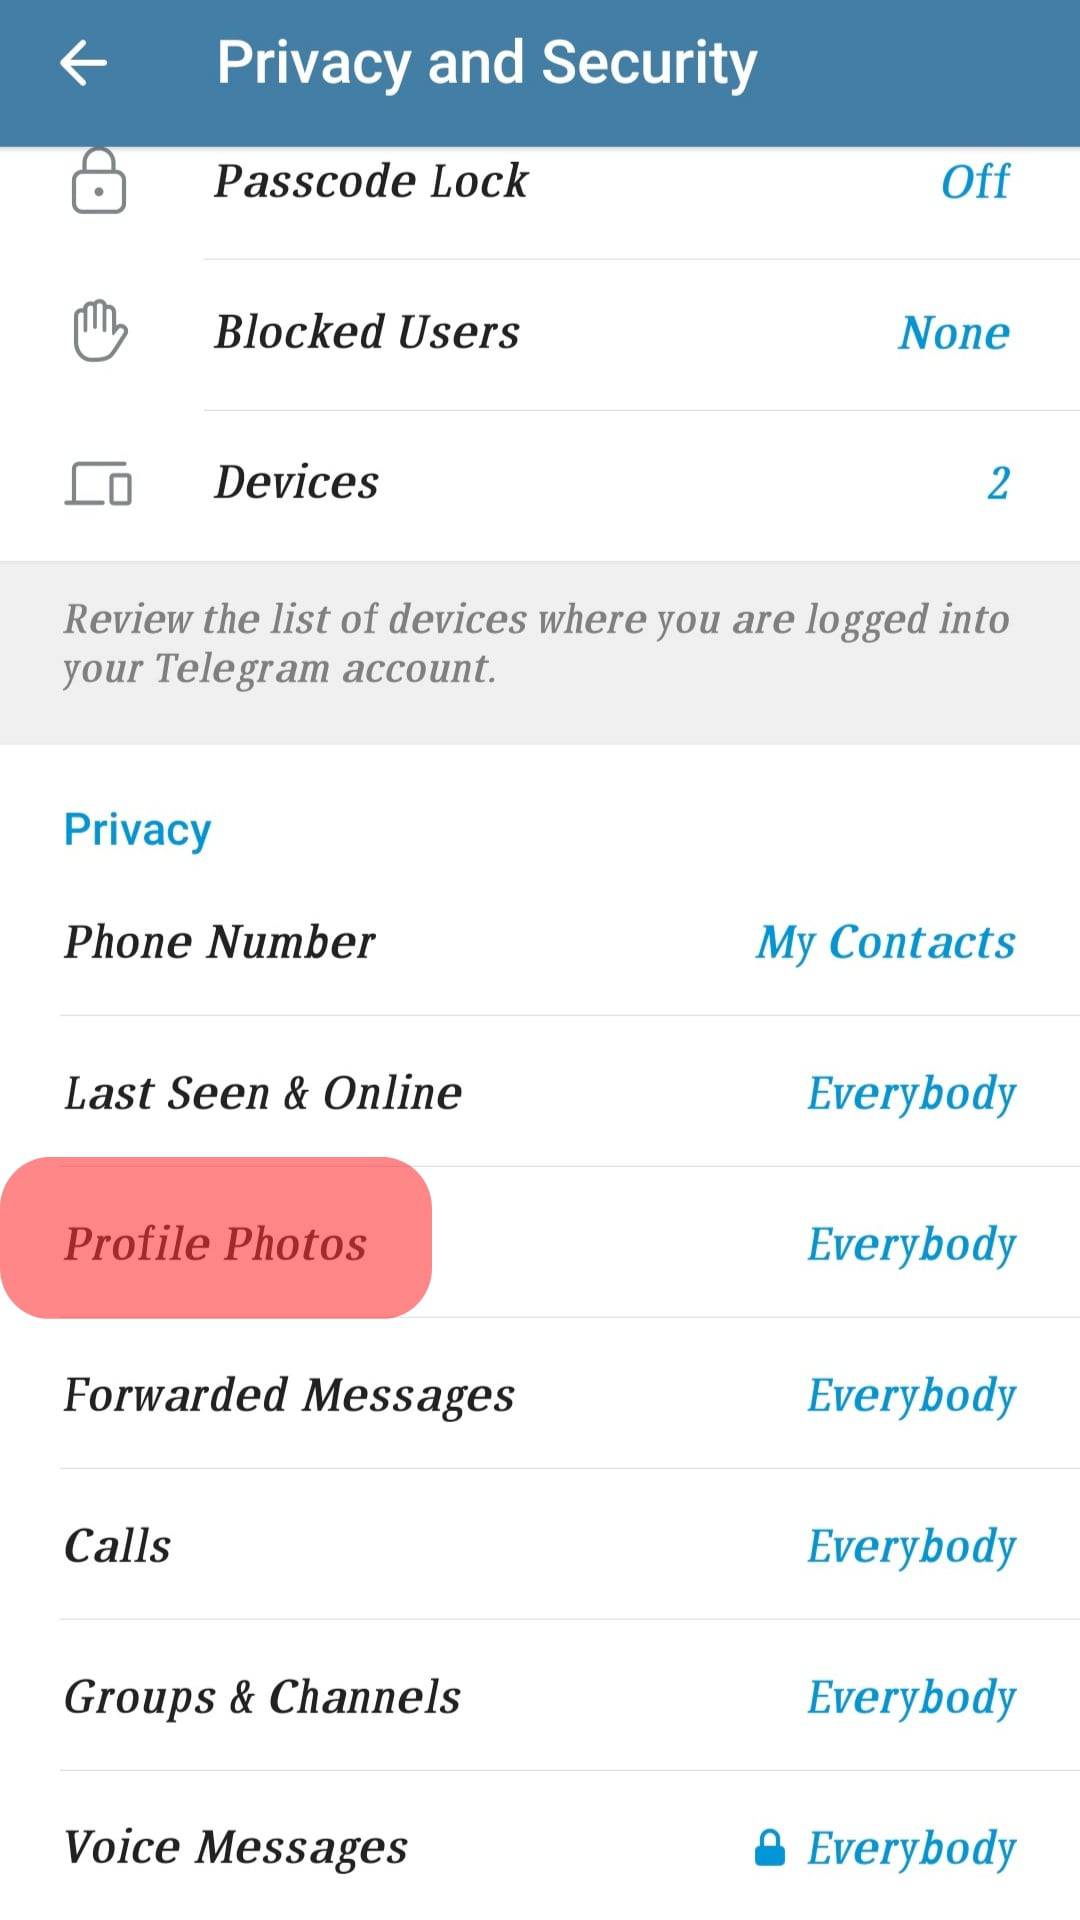 CÃ³mo cambiar la configuraciÃ³n de privacidad en Telegram